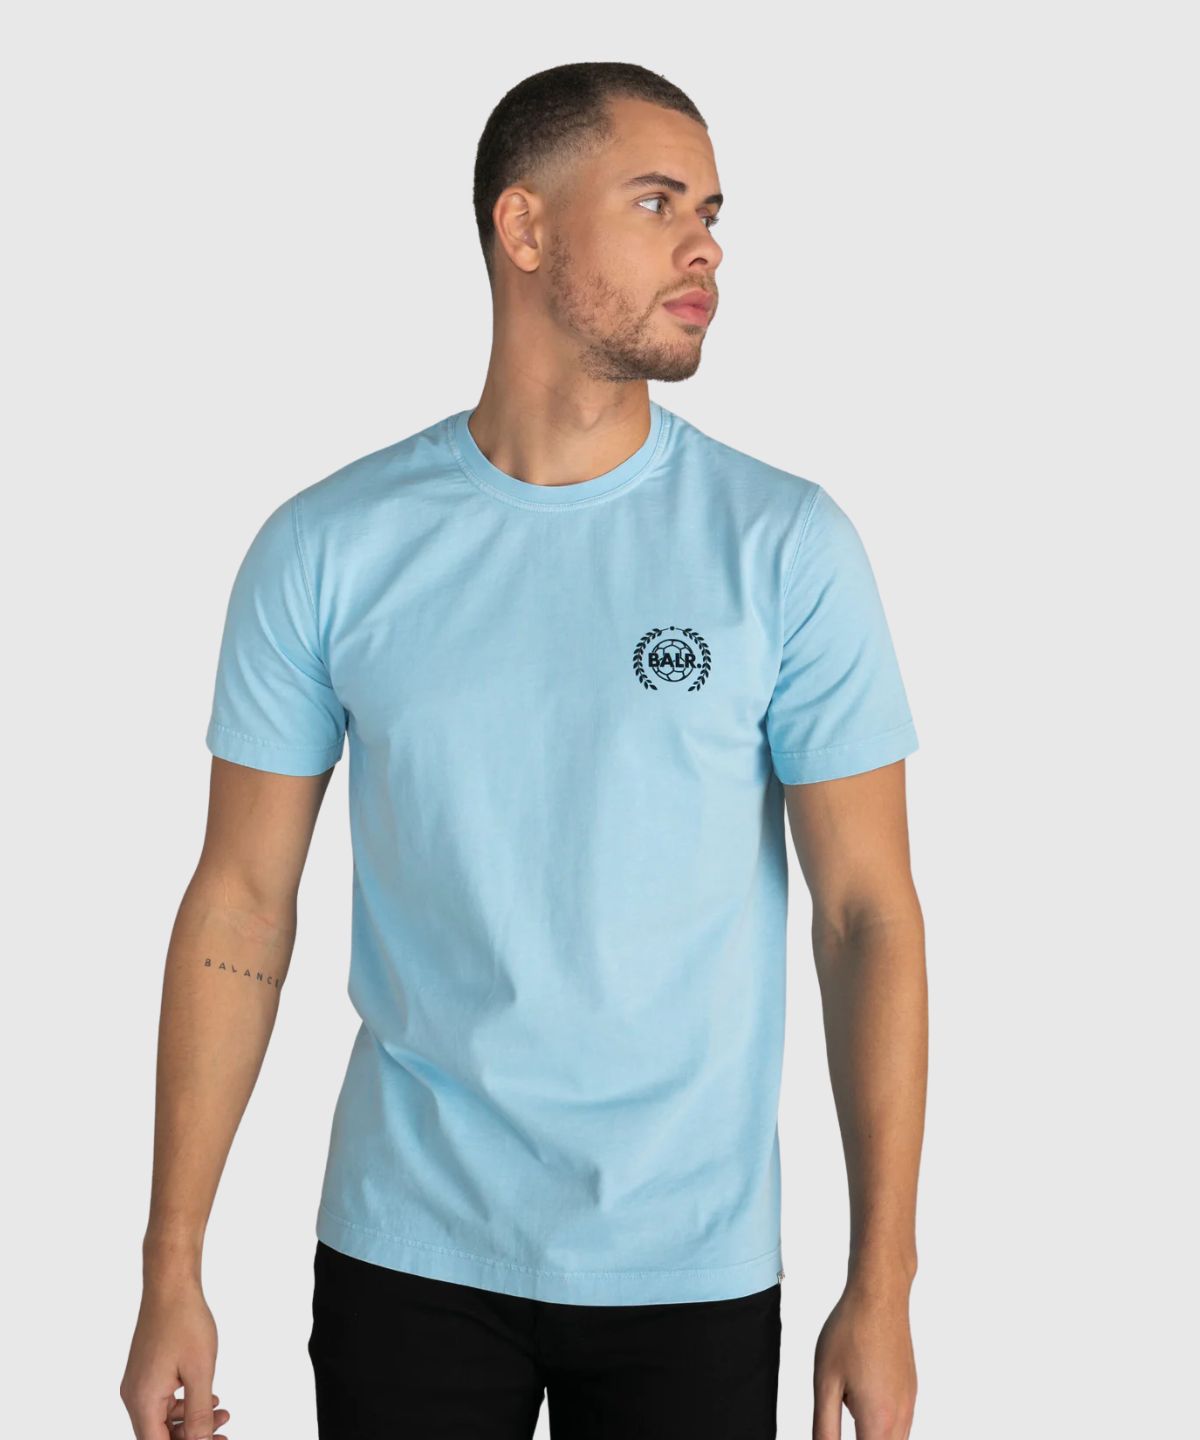 Olaf Straight Crest T-Shirt - Maxx Group